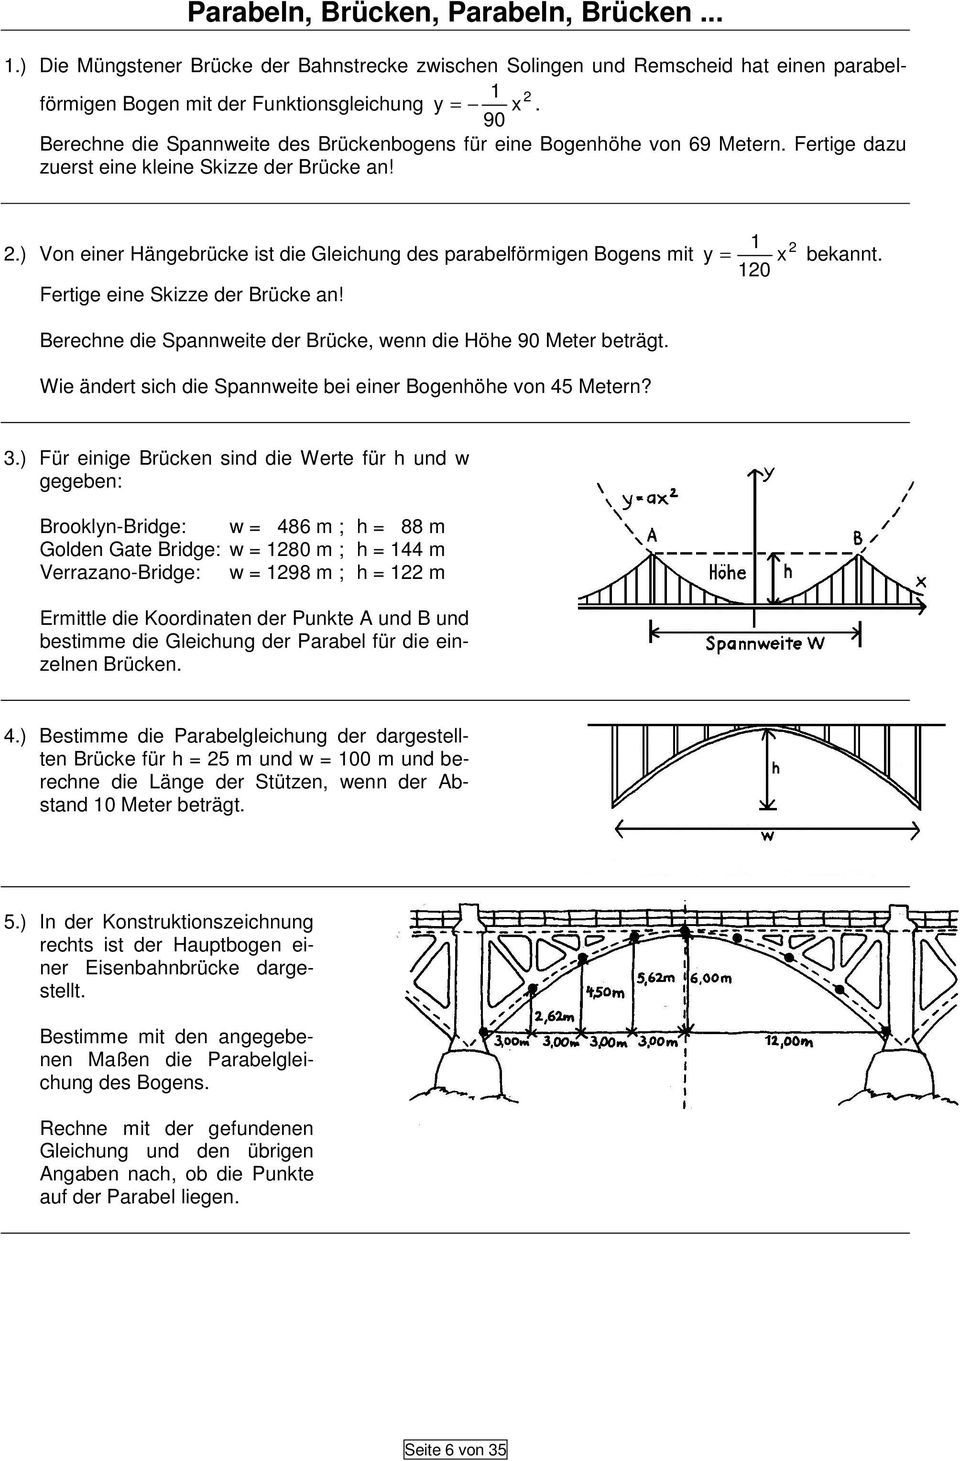 .) Von einer Hängebrücke ist die Gleichung des parabelförmigen Bogens mit Fertige eine Skizze der Brücke an! = x bekannt. 0 Berechne die Spannweite der Brücke, wenn die Höhe 90 Meter beträgt.